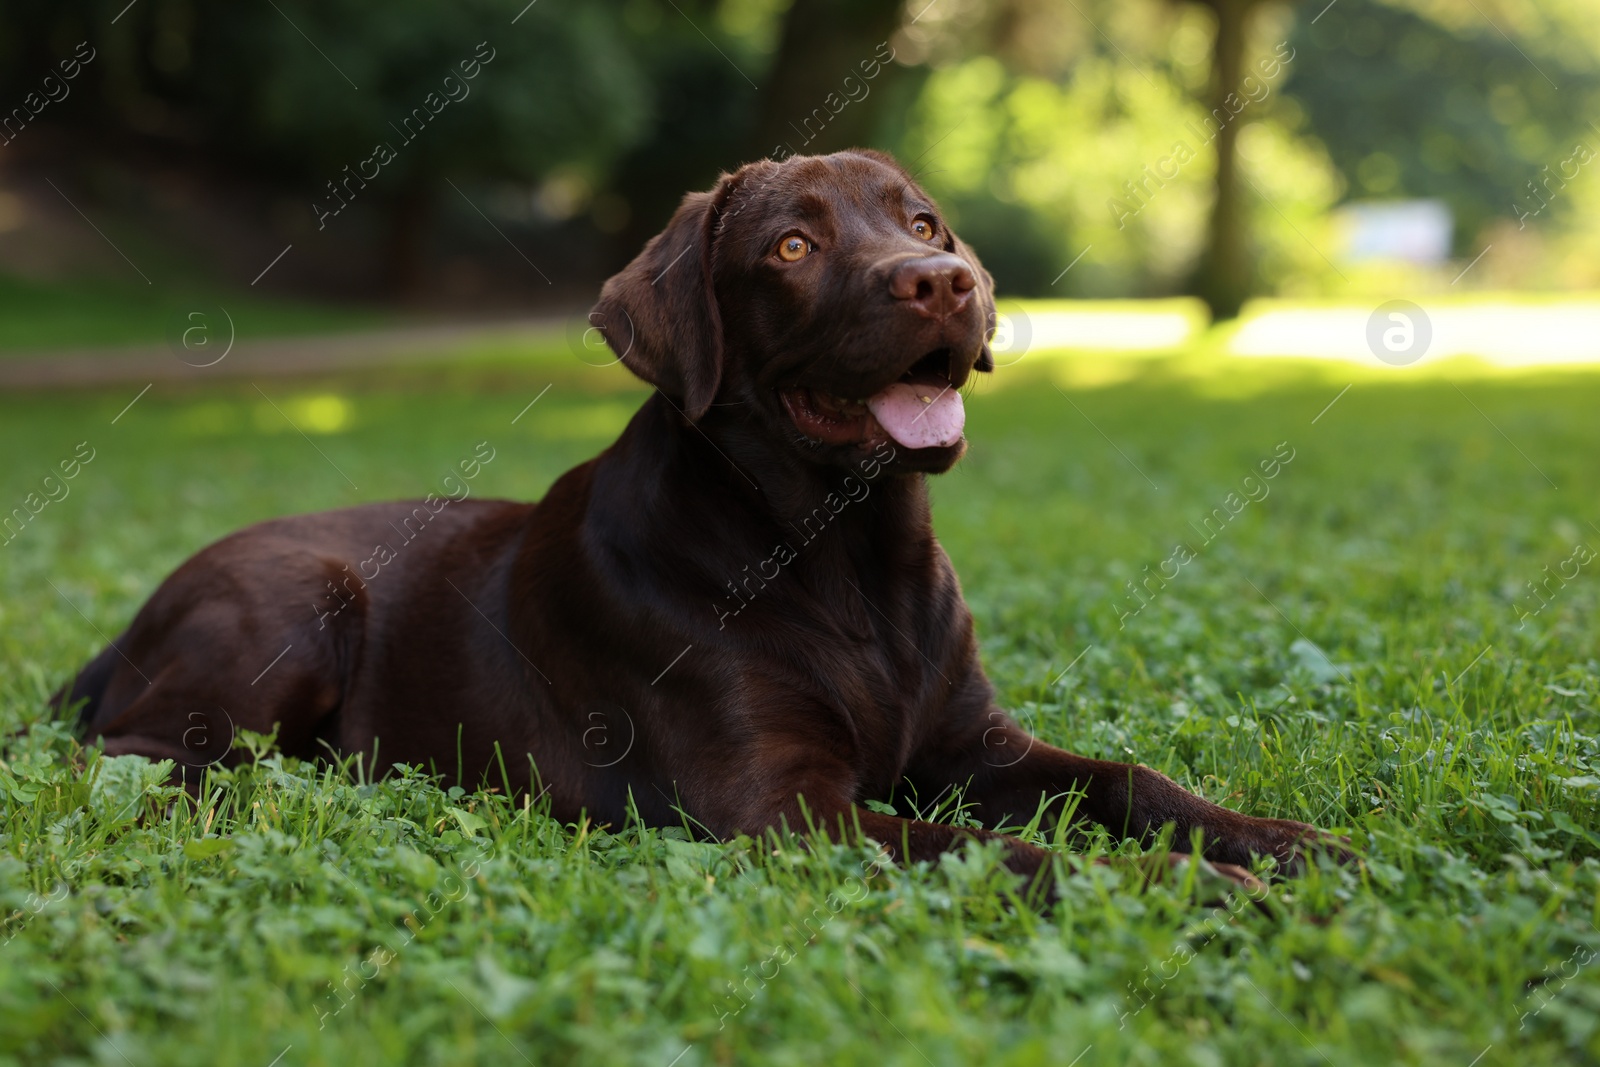 Photo of Adorable Labrador Retriever dog lying on green grass in park